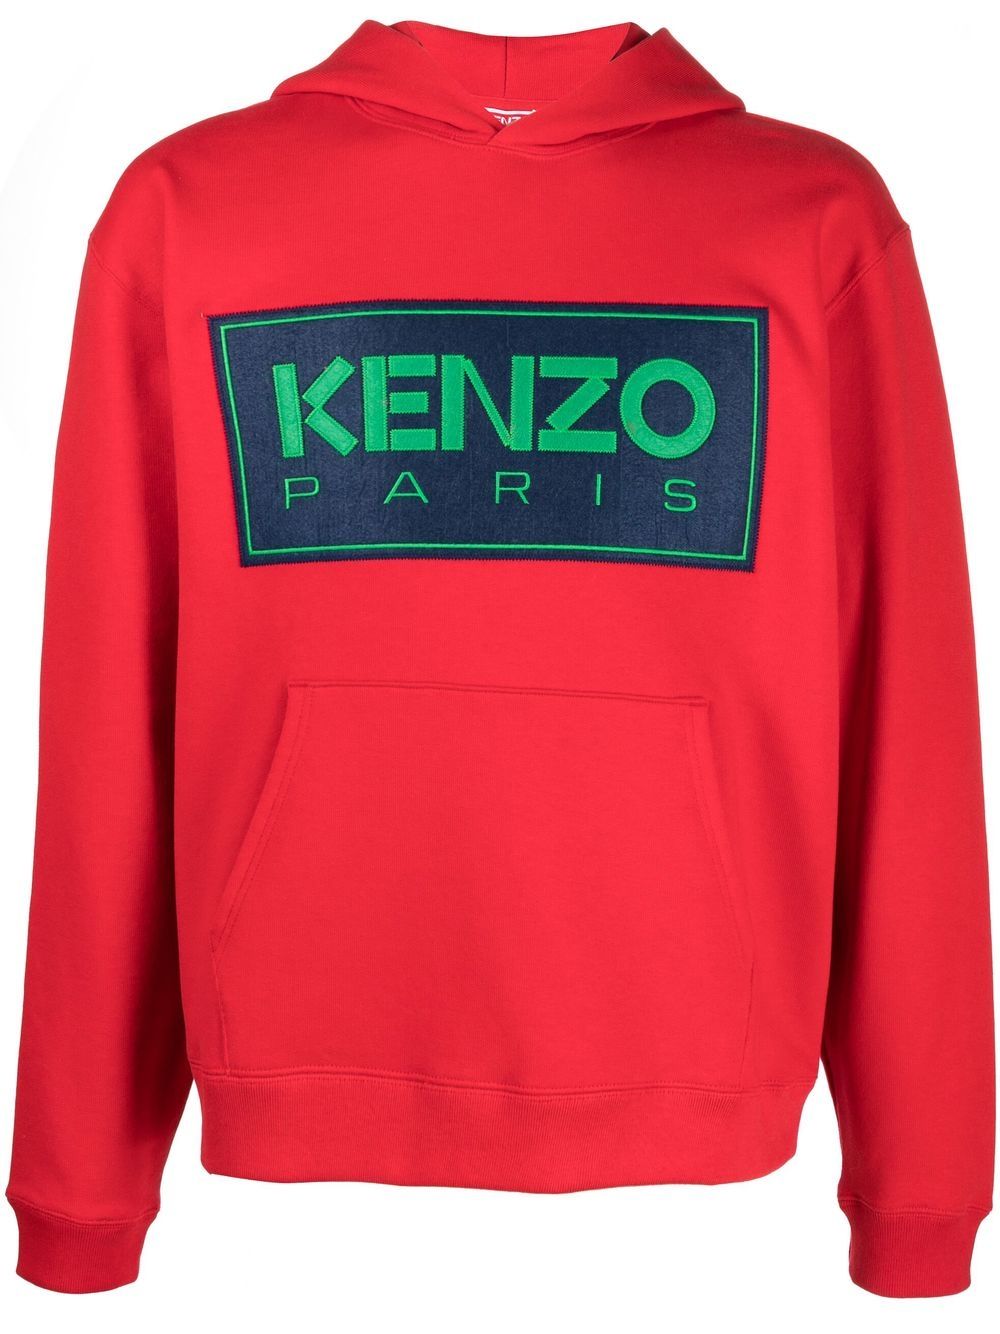 Kenzo Sweat à capuche rouge Paris - Lothaire boutiques